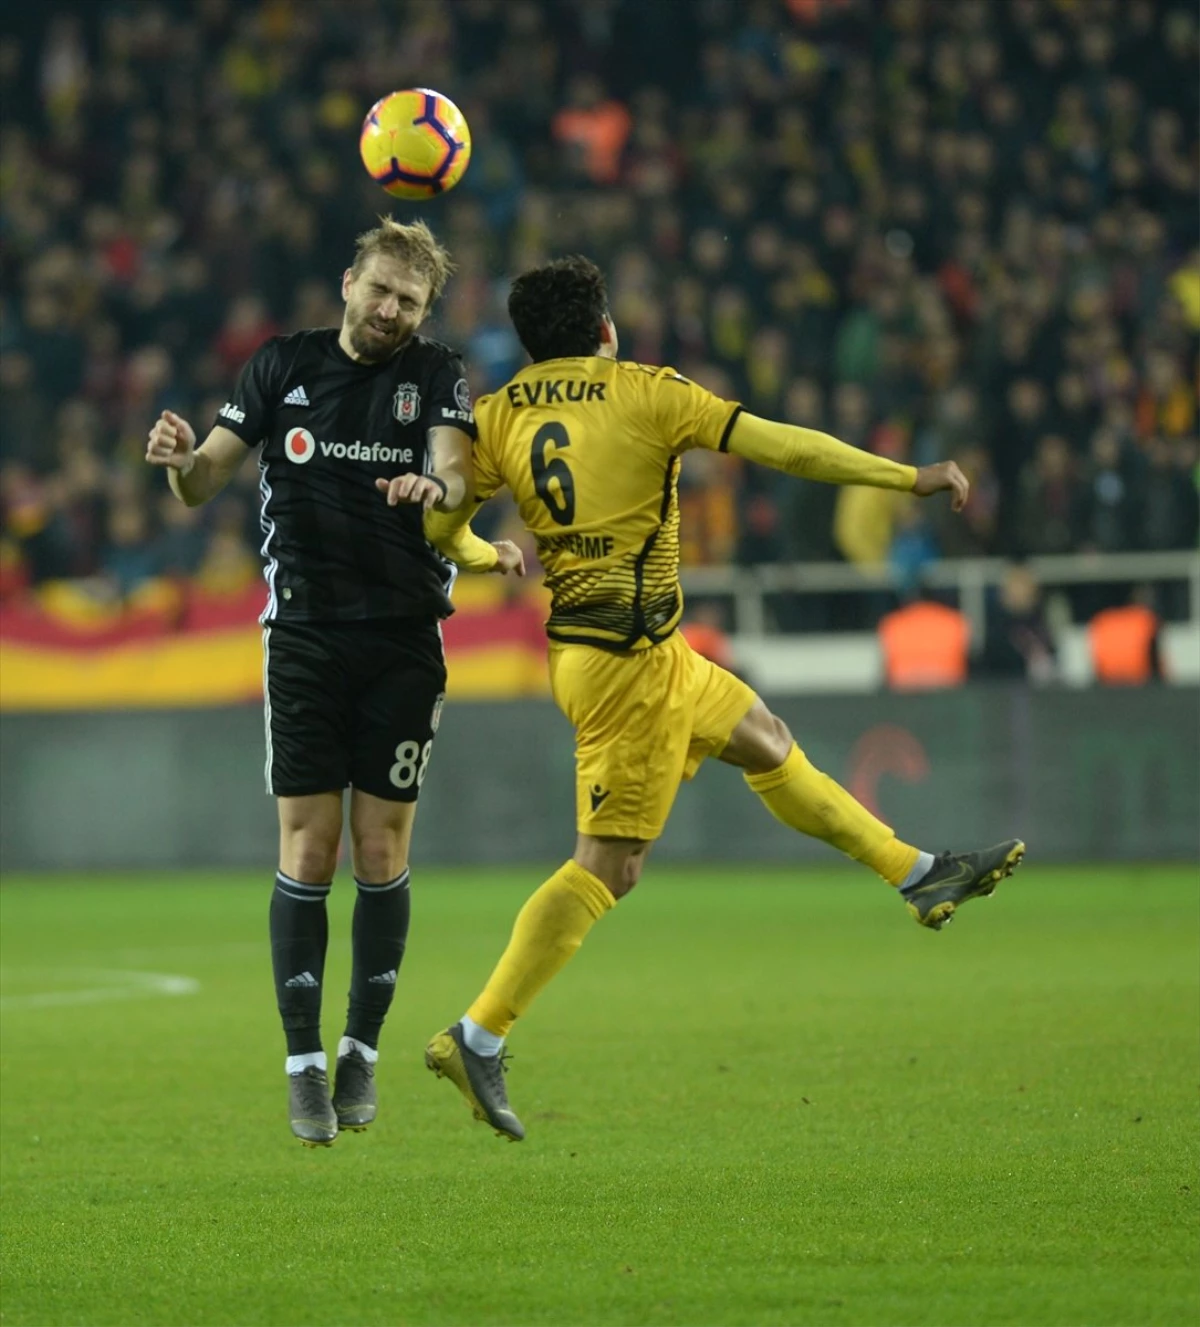 Evkur Yeni Malatyaspor-Beşiktaş Maçından Notlar